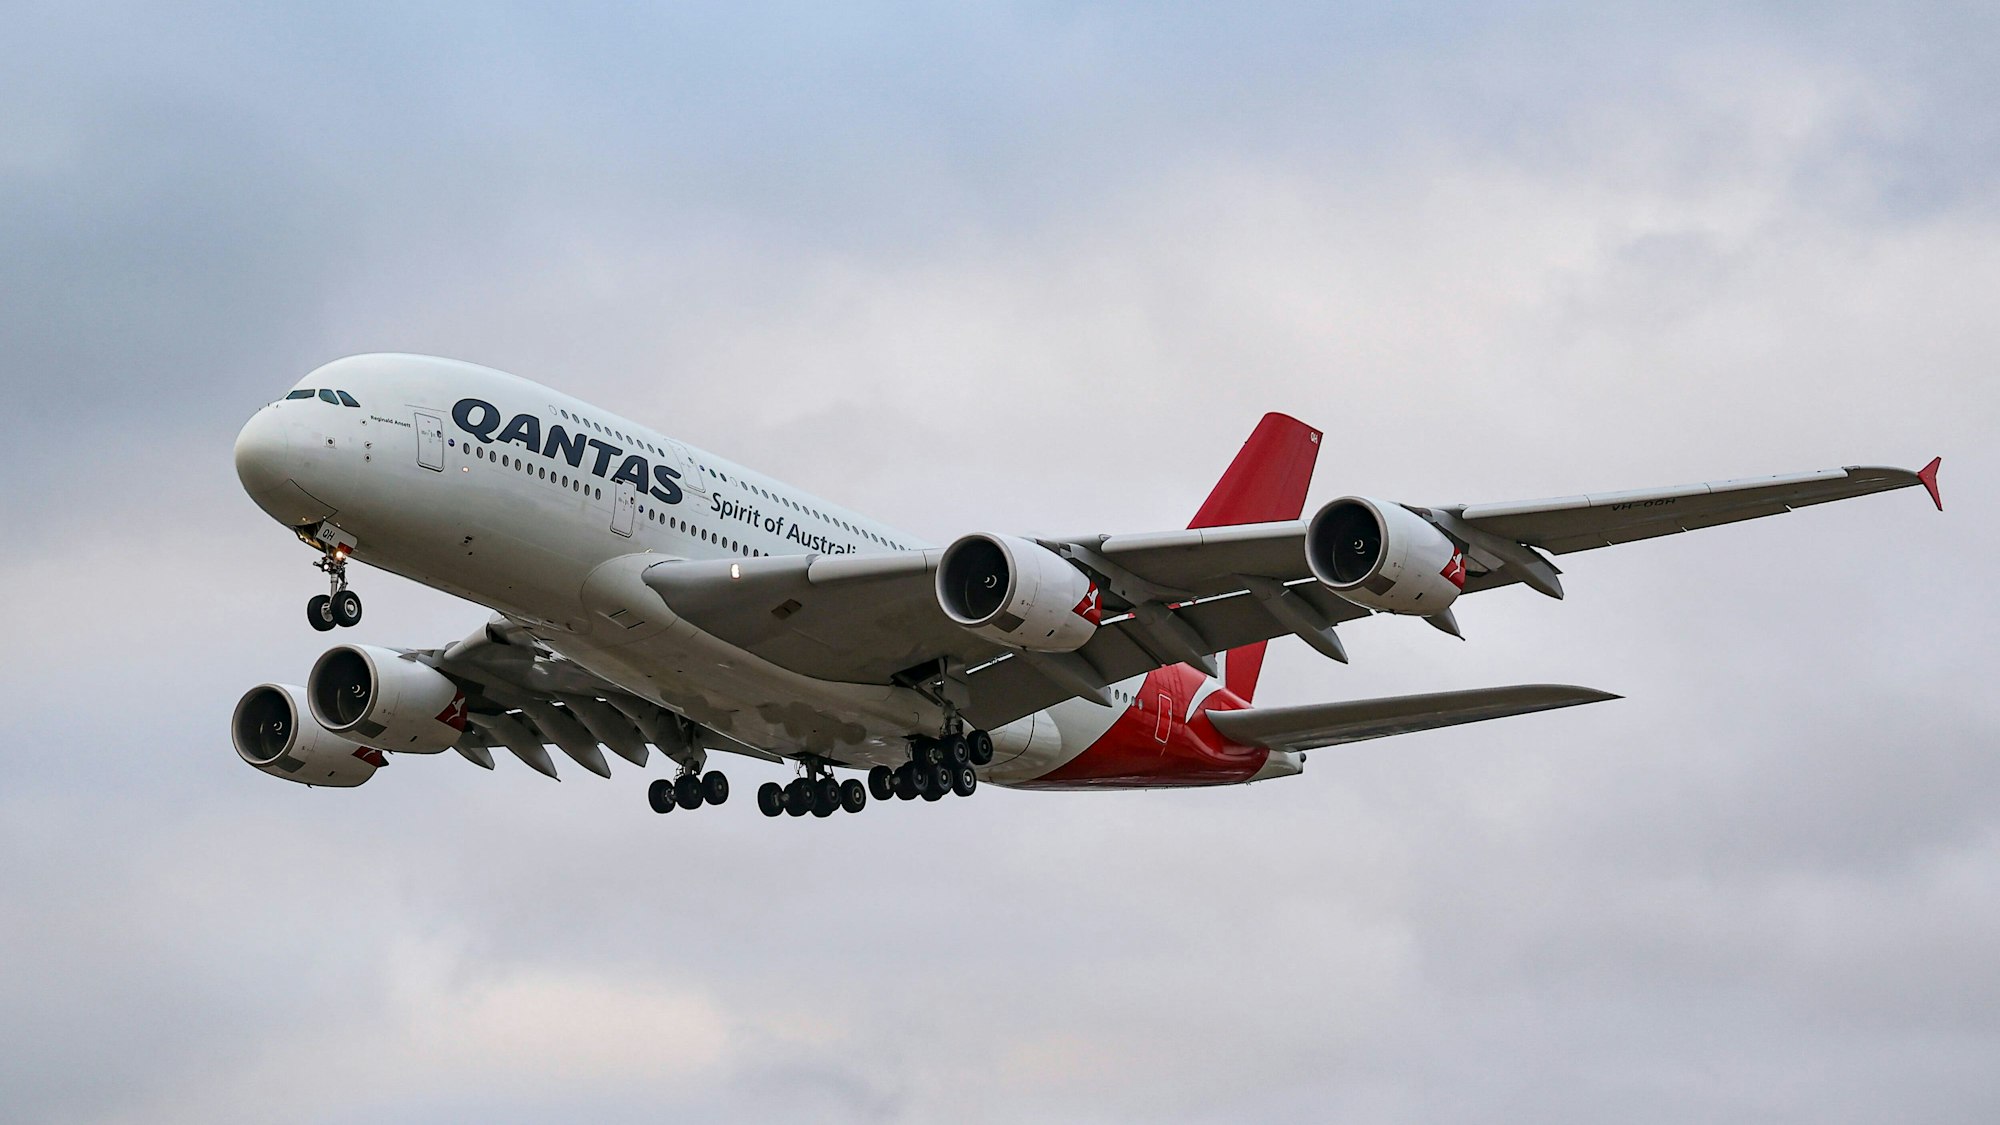 Ein Airbus A380 der australischen Fluggesellschaft Qantas im Steigflug am Flughafen London-Heathrow. (Symbolbild)